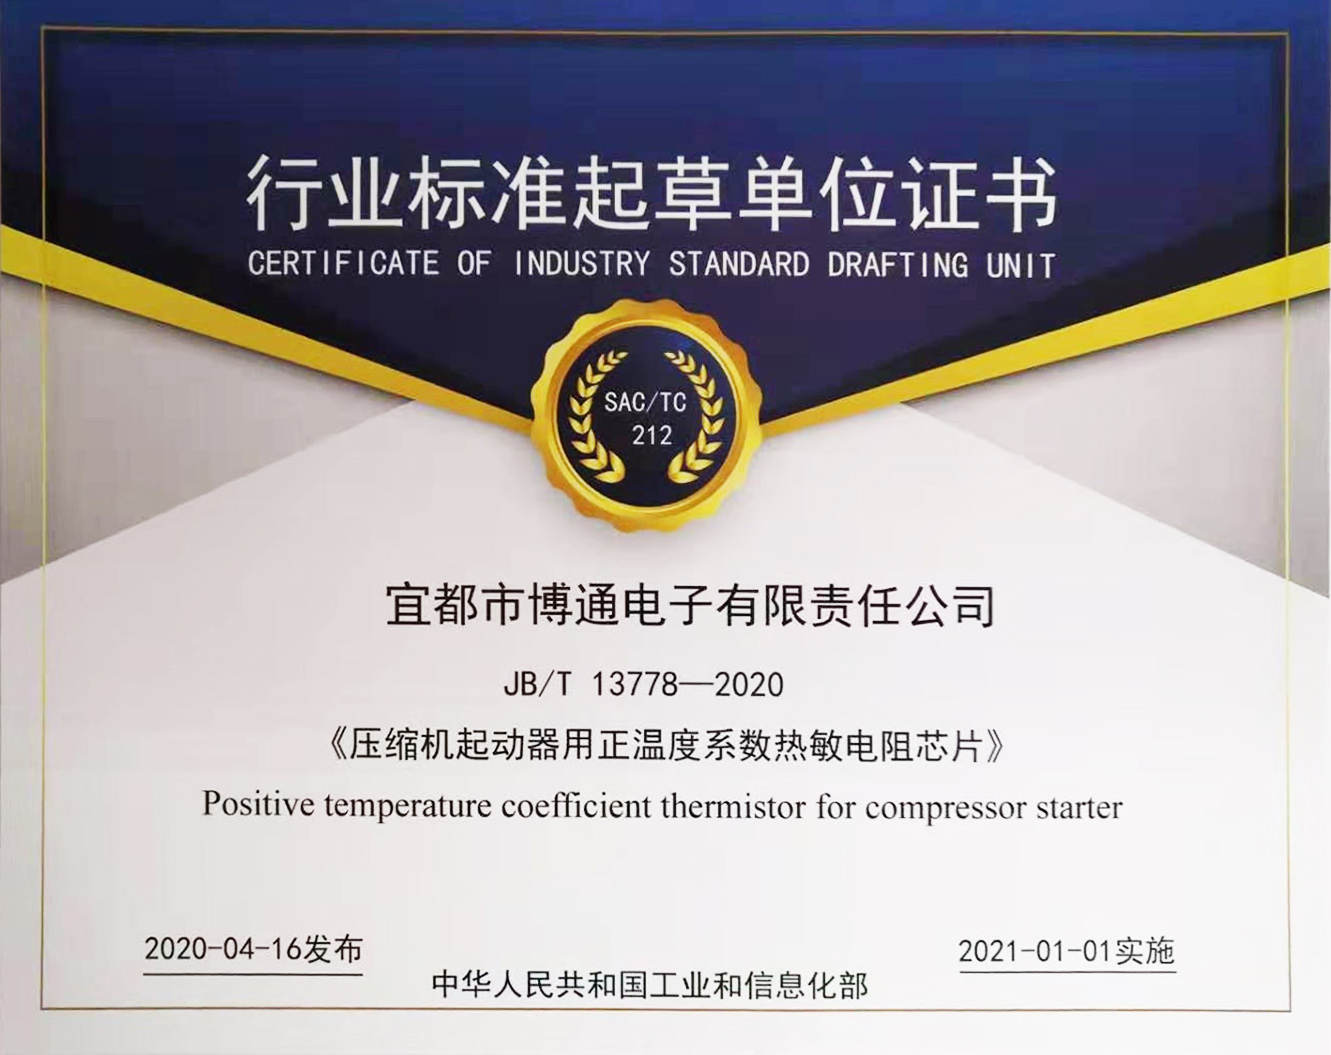 博通公司主導制定行業標準 JB/T 13778-2020《壓縮機起動器用正溫度系數熱敏電阻芯片》